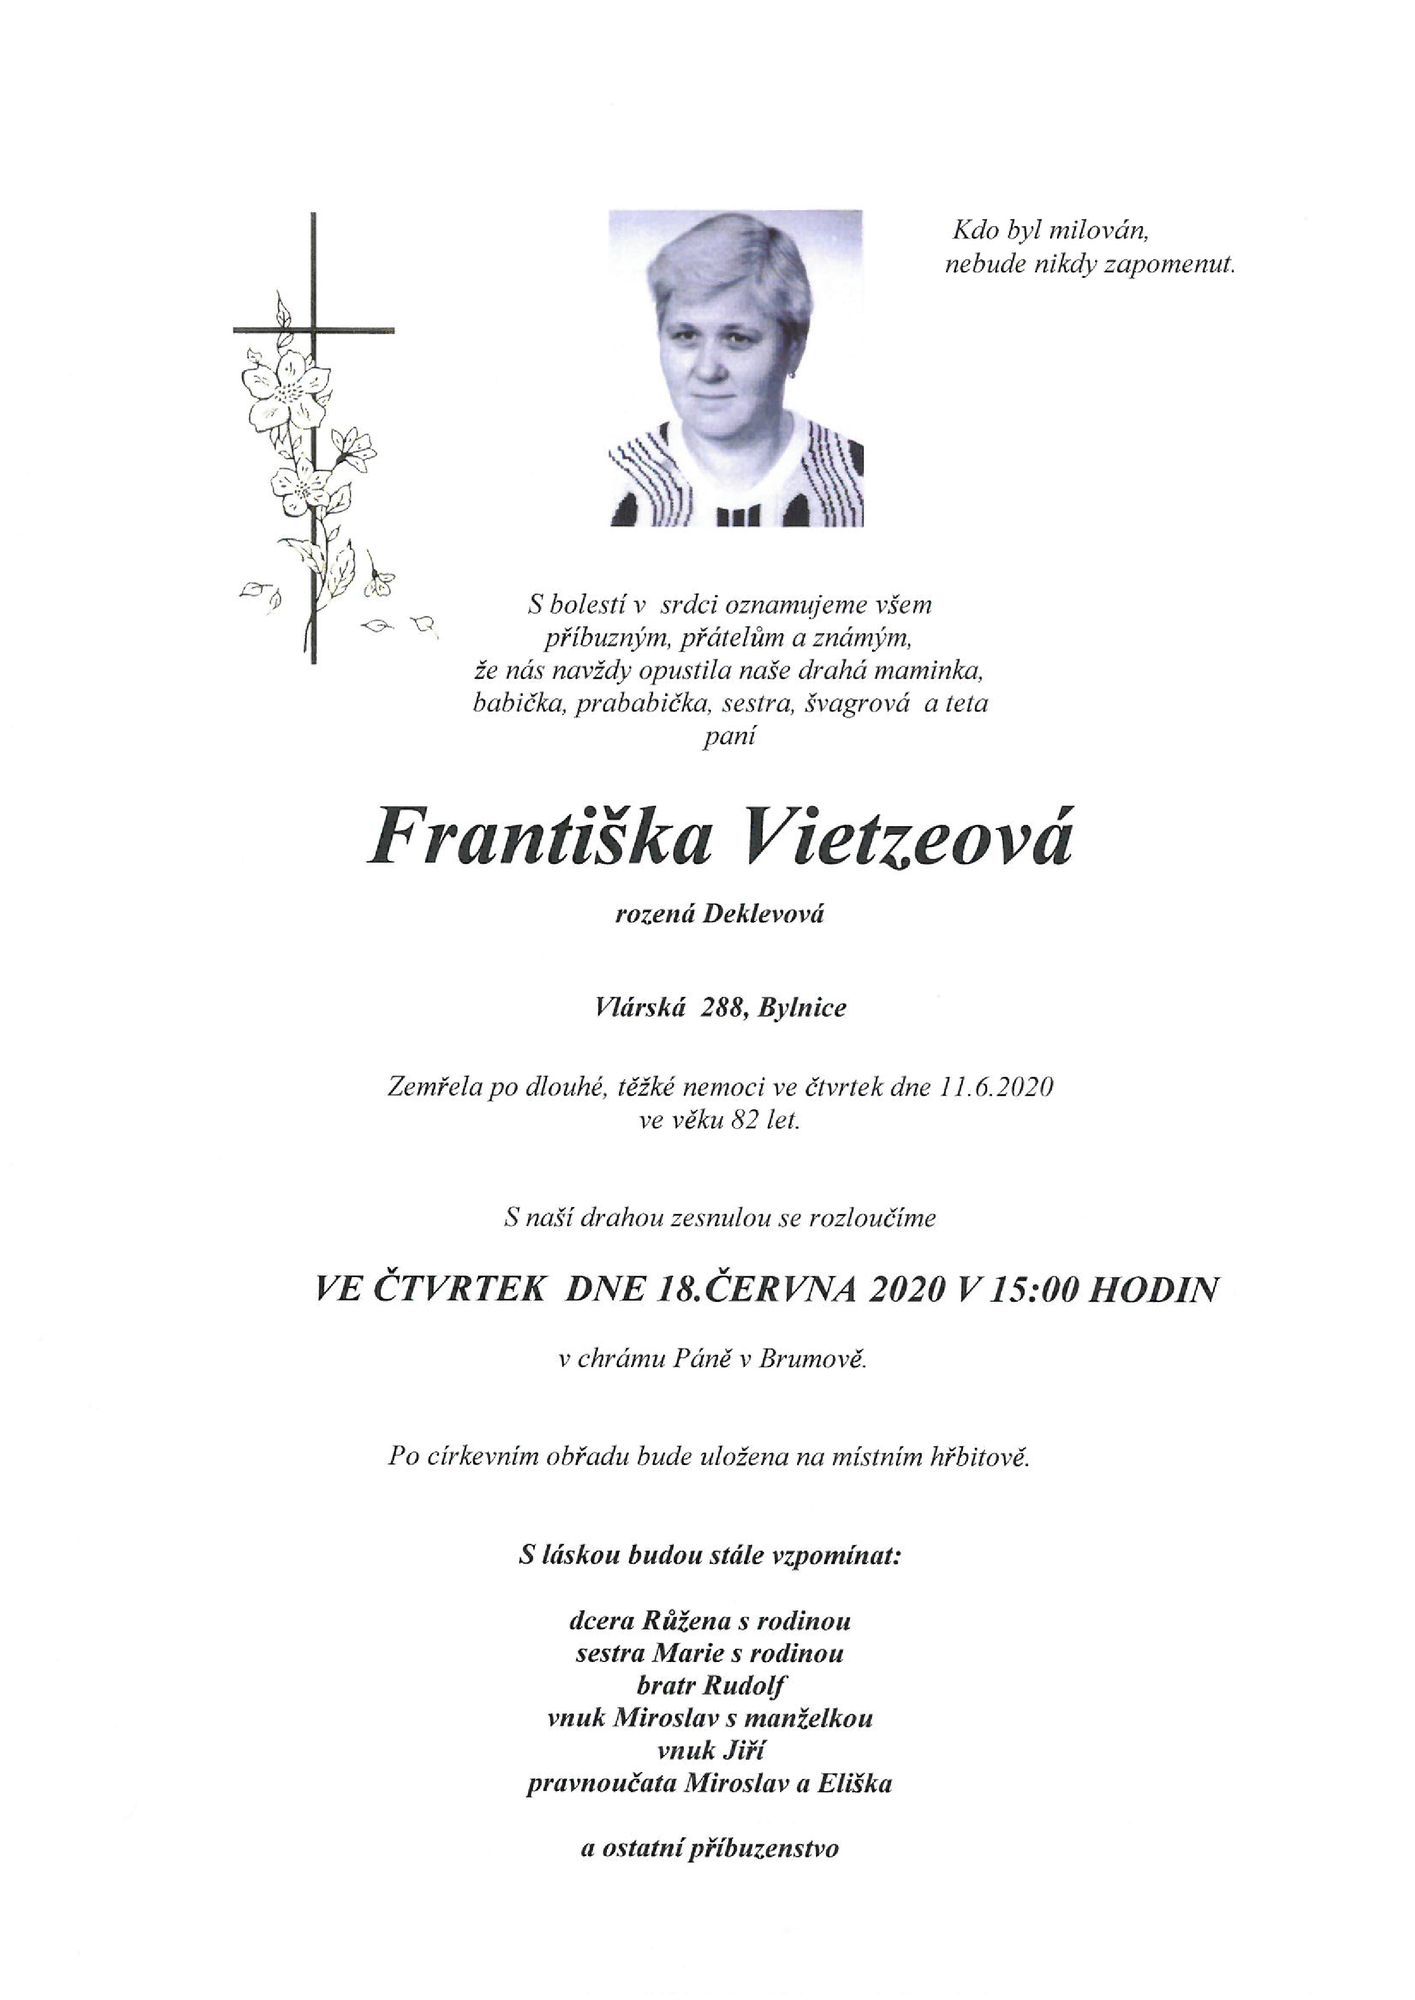 Františka Vietzeová